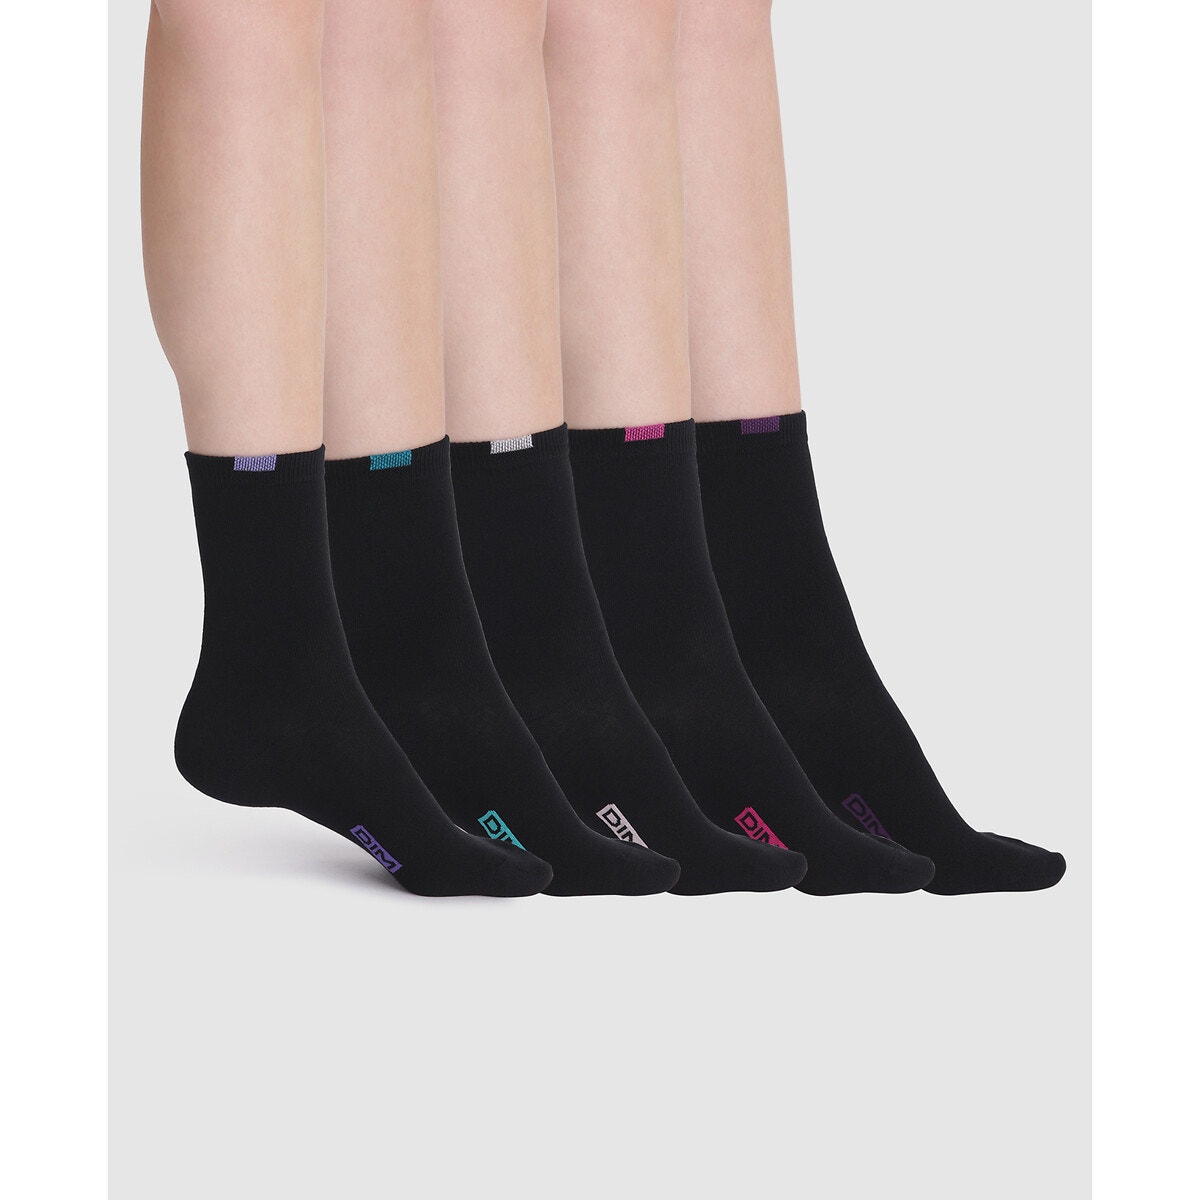 Σετ 5 ζευγάρια κάλτσες, EcoDim